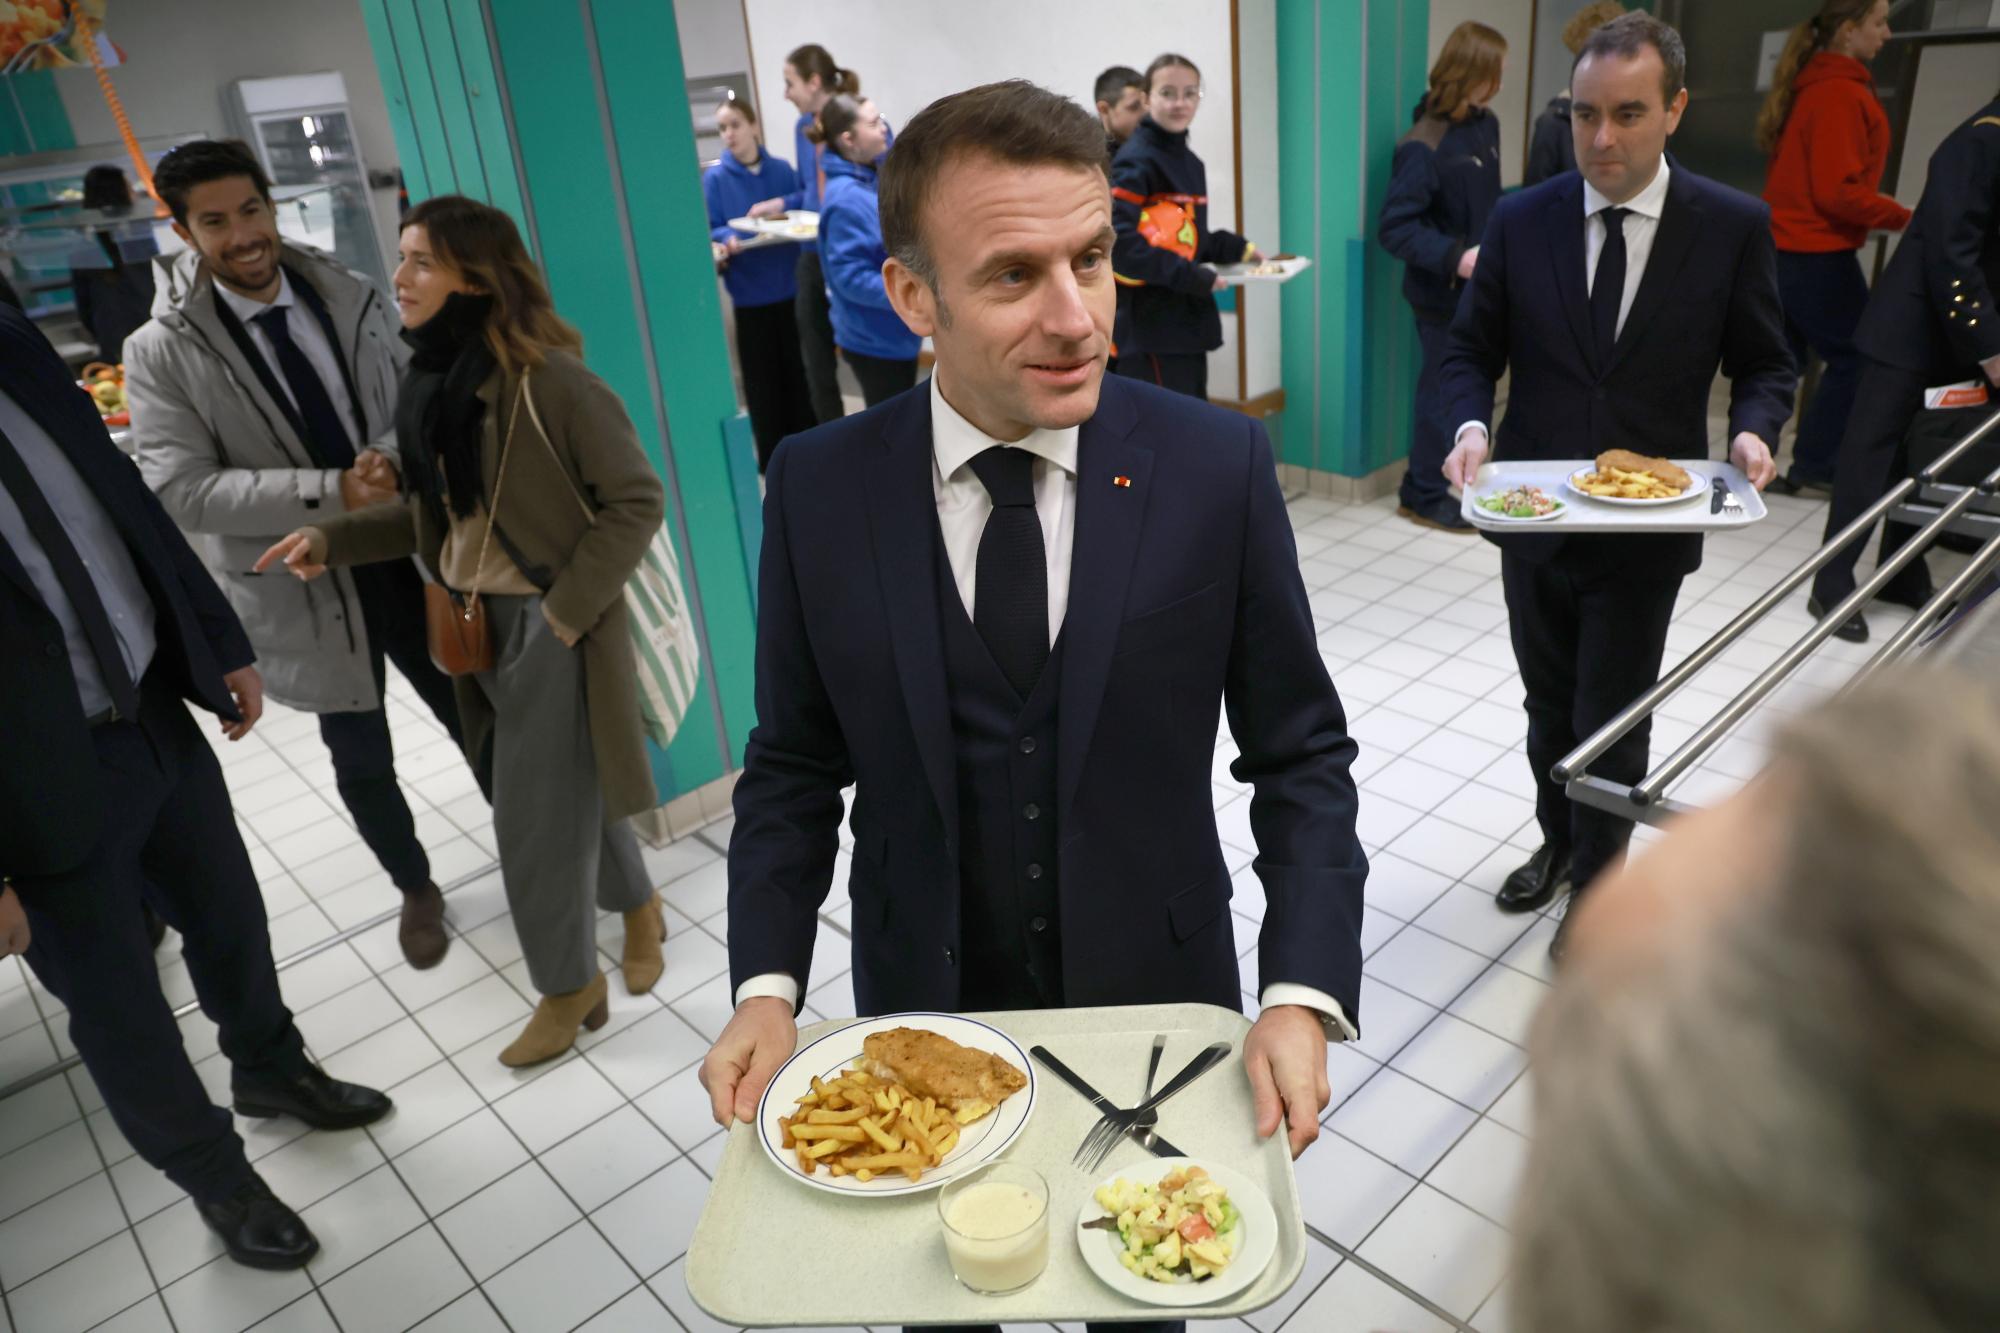 Französische Regierung will bis 2026 einheitliche Schuluniform